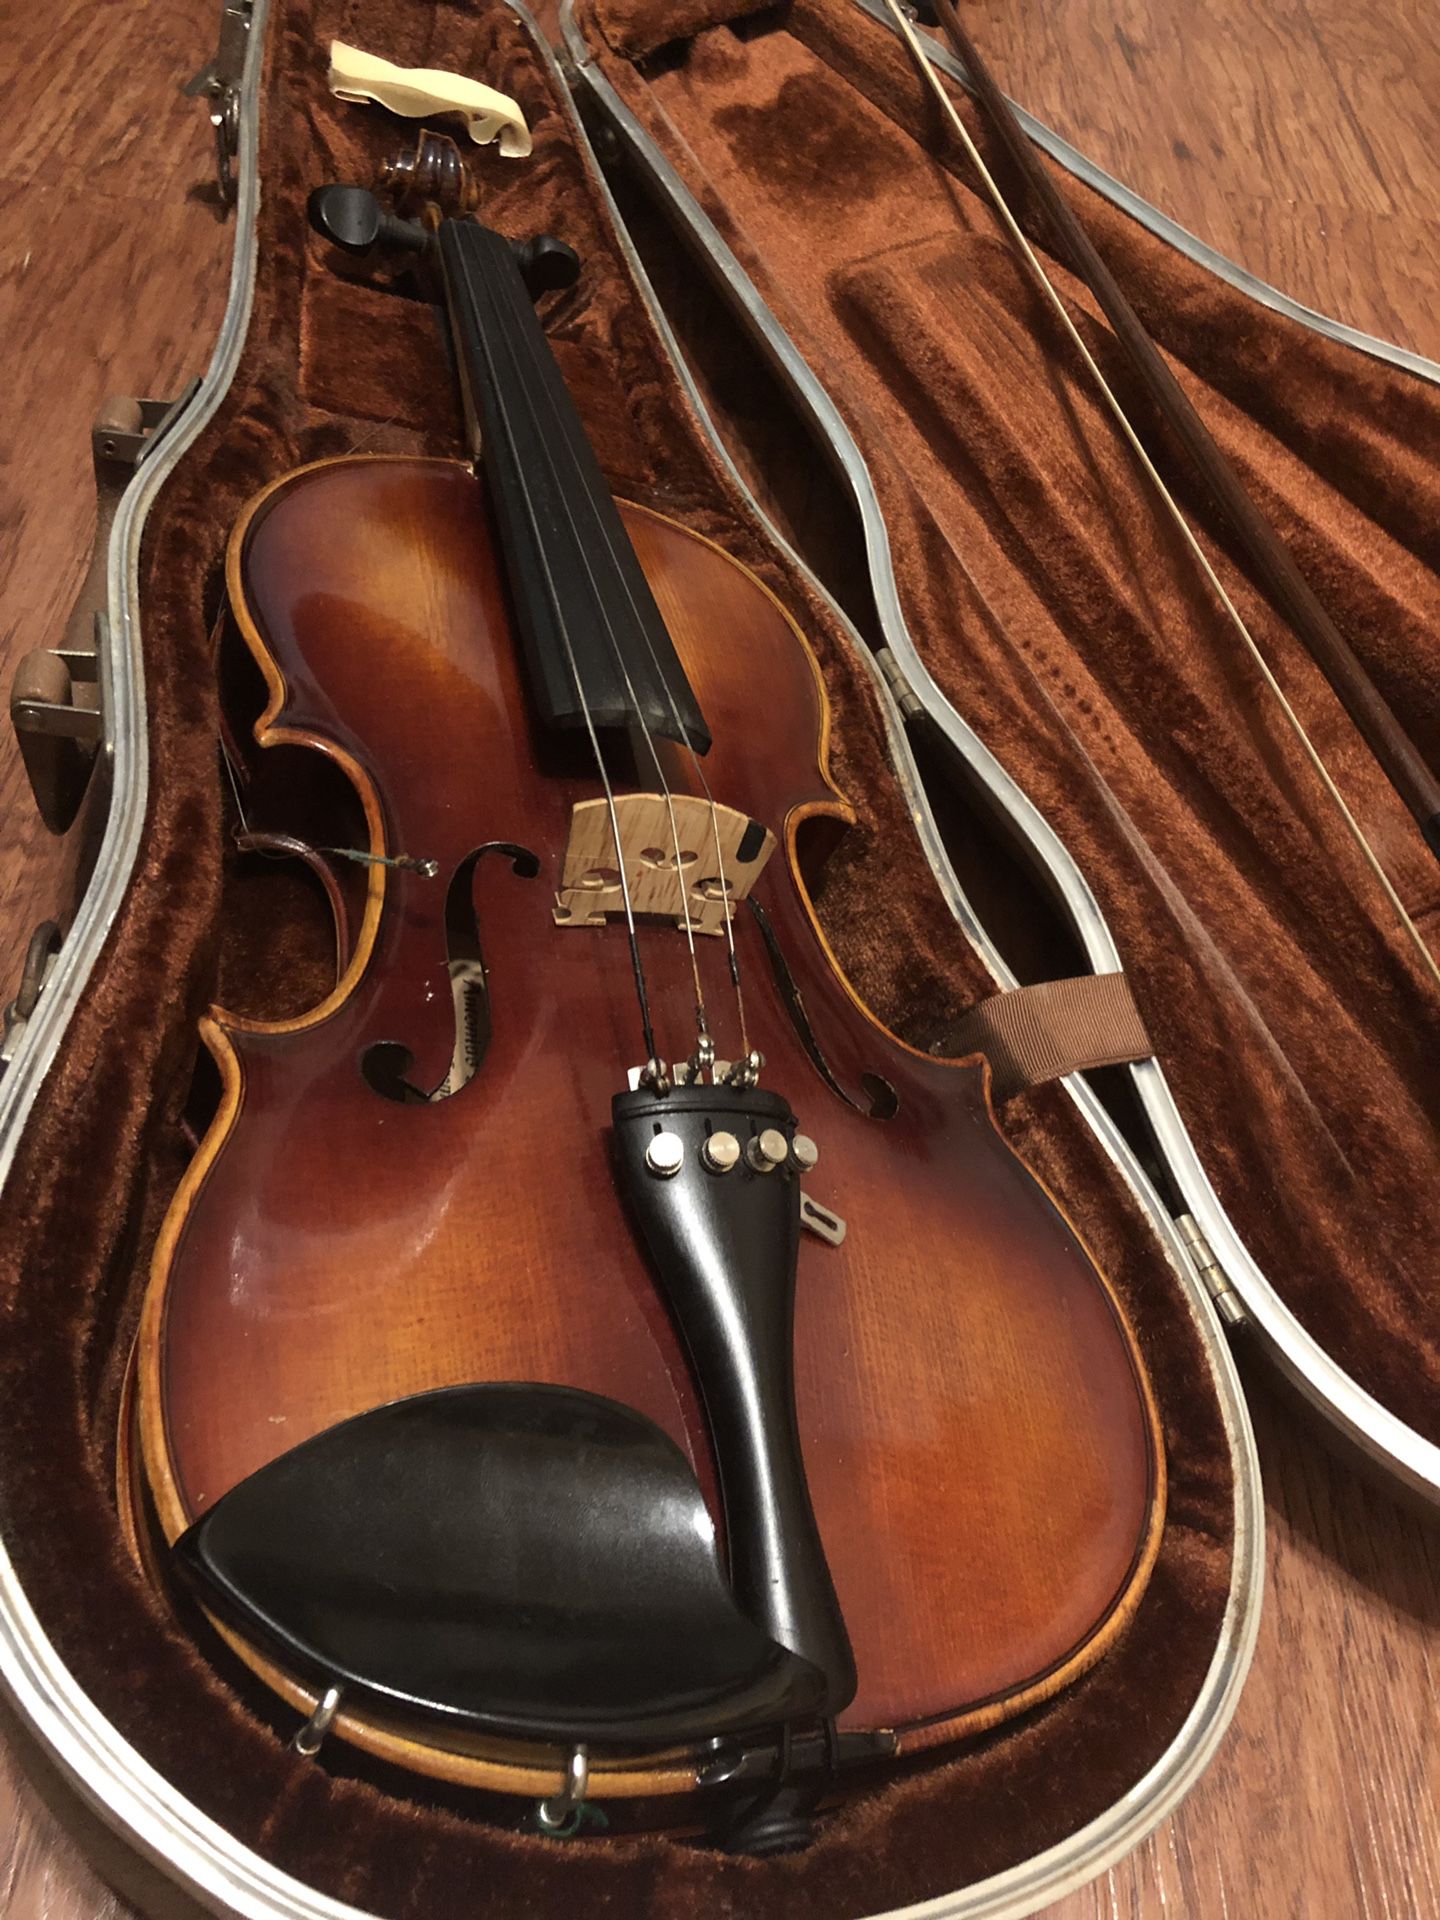 Copy of Stradivarius old violin